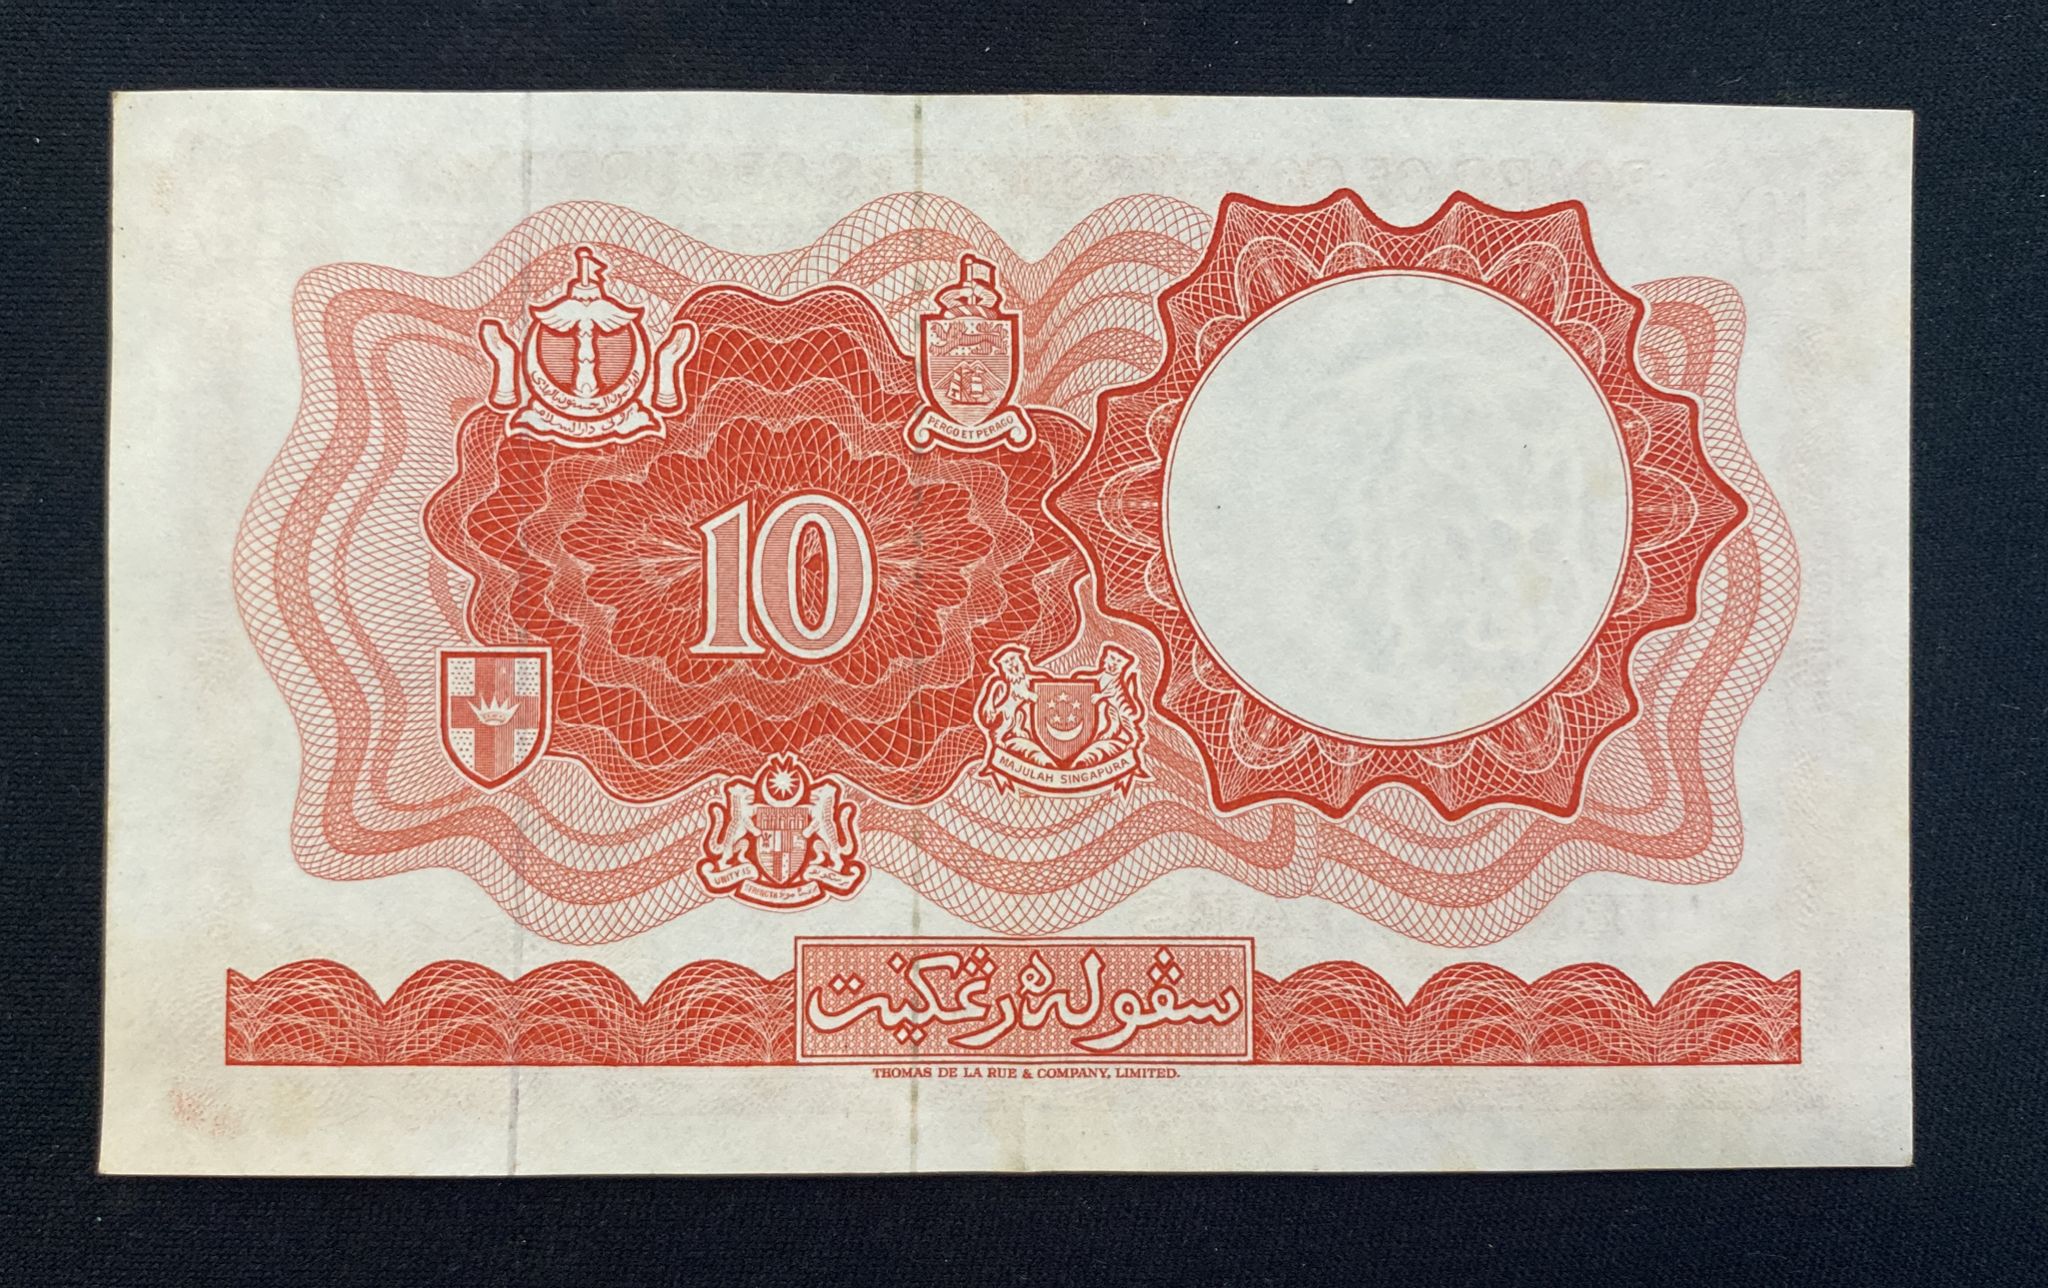 MALAYA & BRITISH BORNEO 1; 10 DOLLARS 1959, 1961 (4) - Image 8 of 17